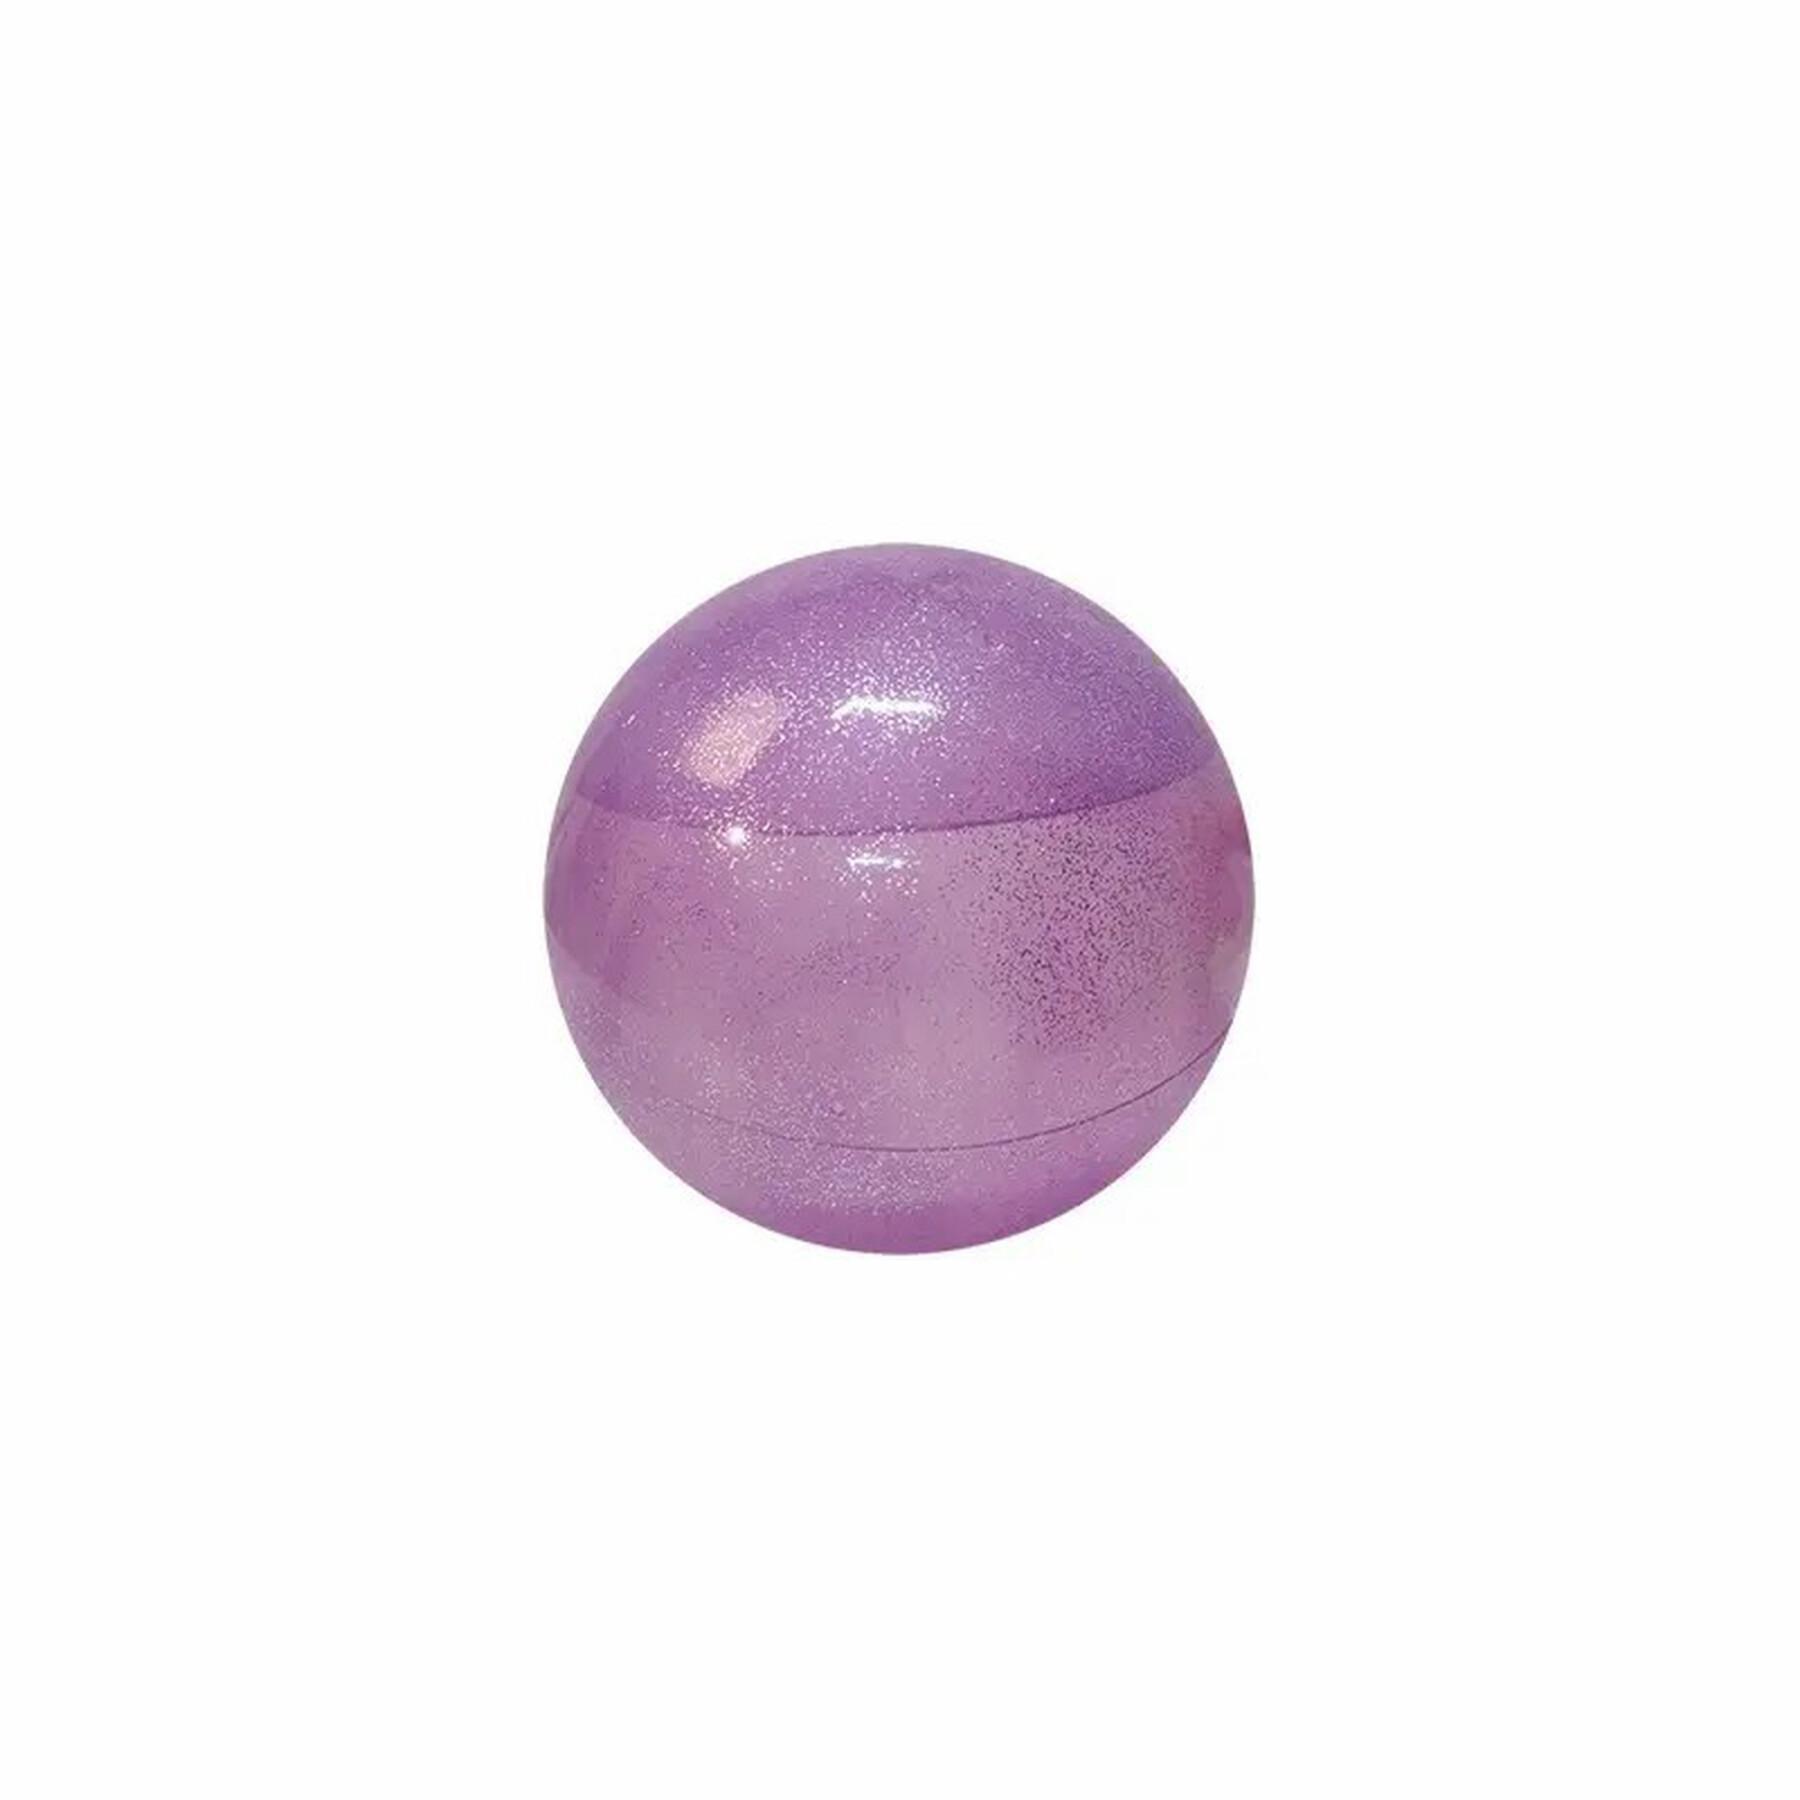 Medecine ball Softee Transparente 1.5 kg